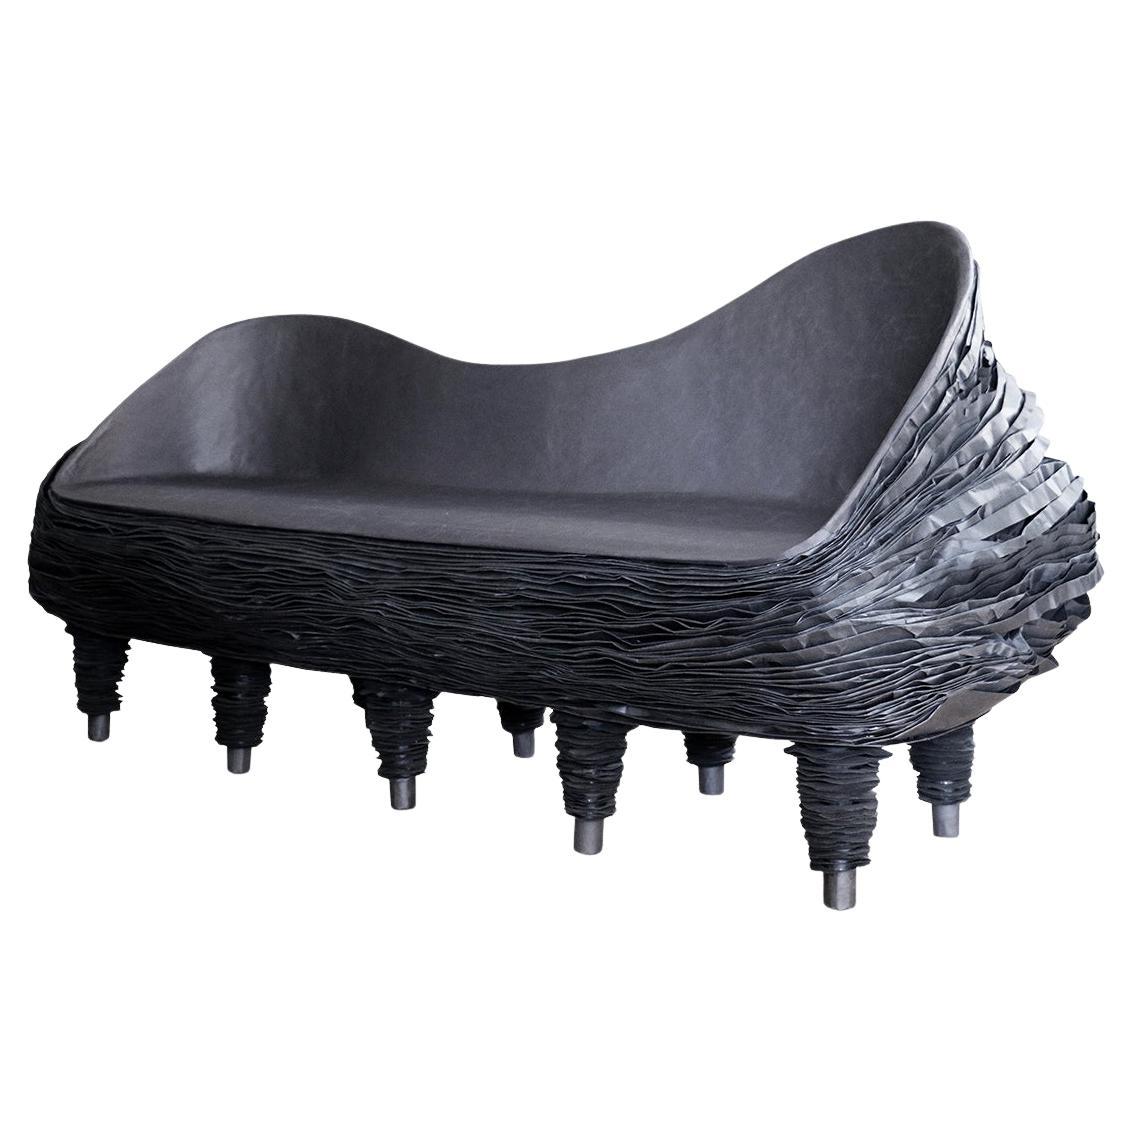 Zweisitziges Sammlerstück aus schwarzem Papier-Sofa Duolly von Vadim Kibardin